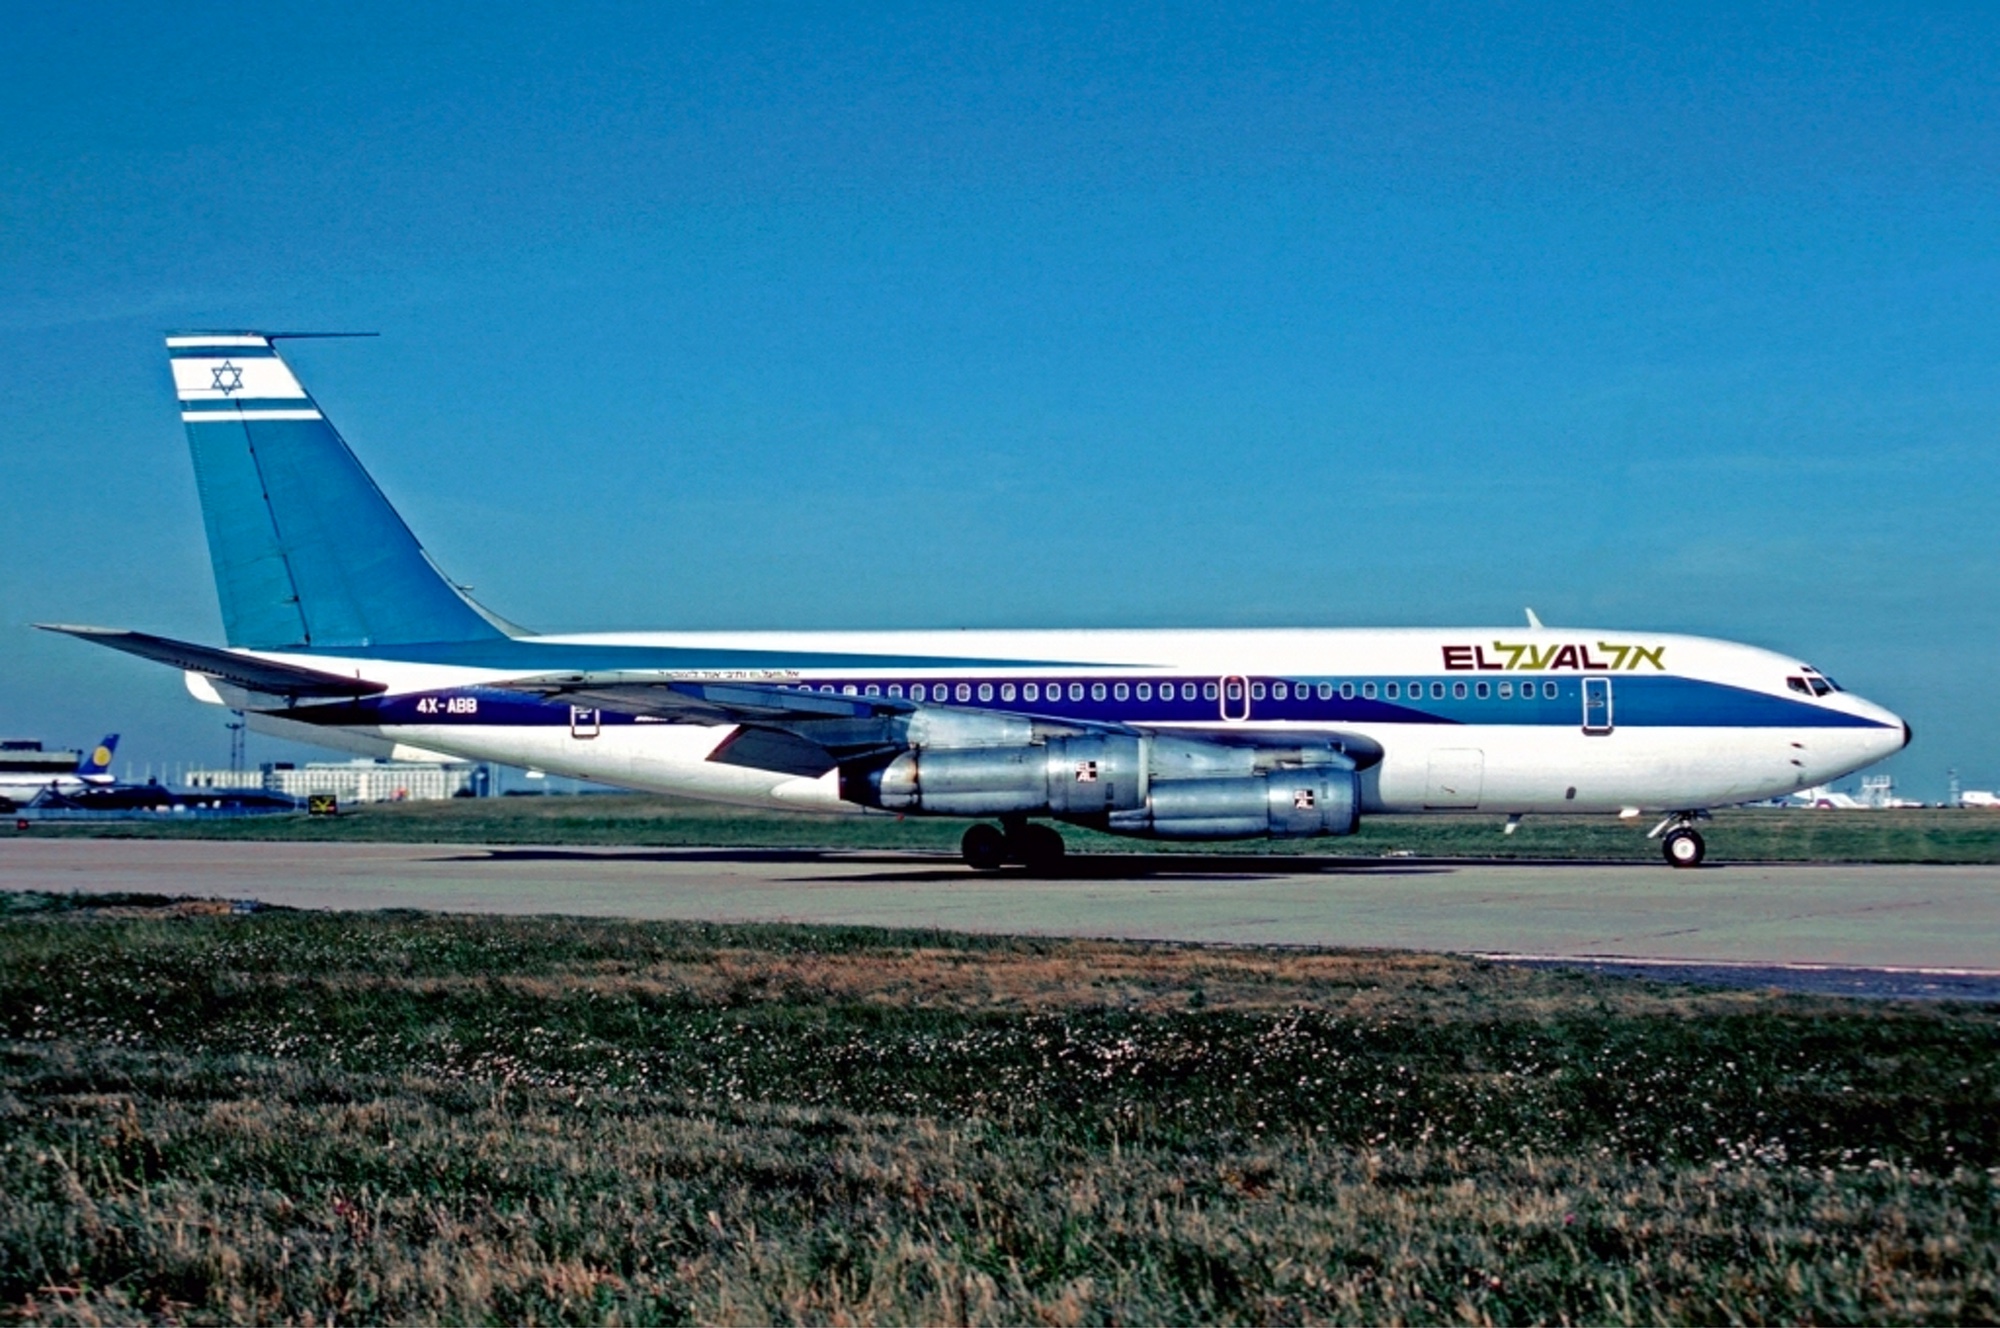 Foto: Boeing 720 der Fluggesellschaft El Al, die in das Attentat von Kloten (1969) verwickelt war